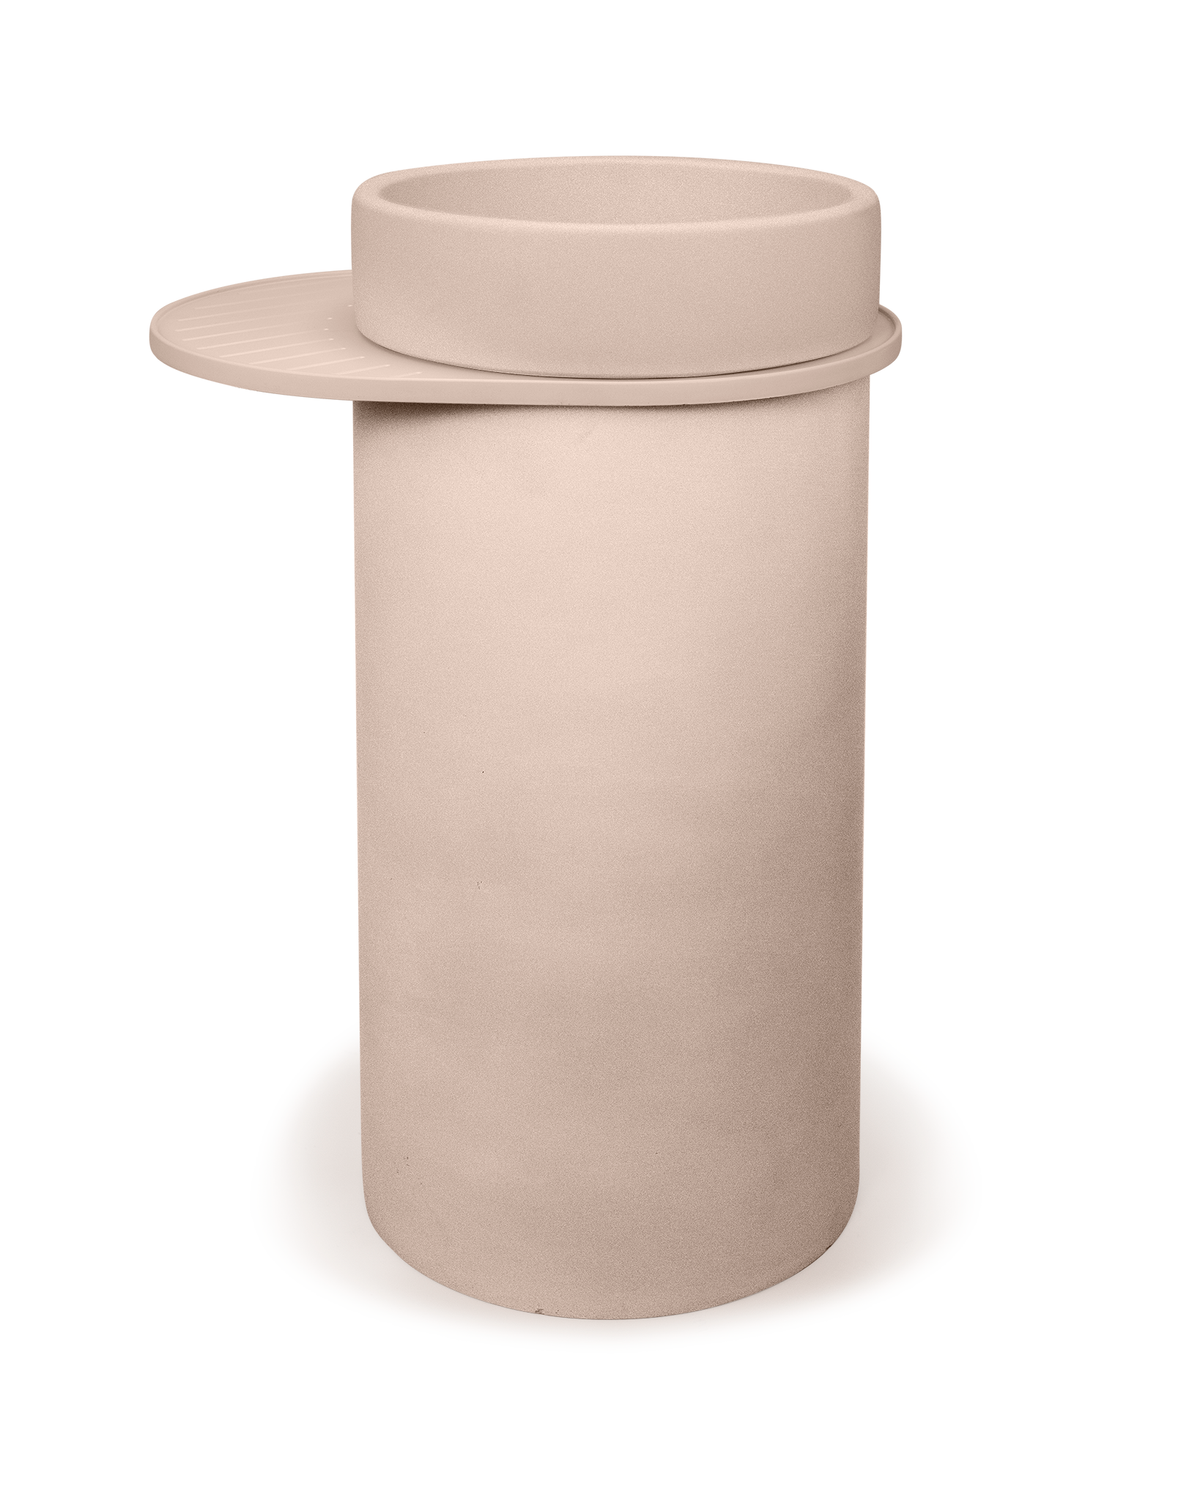 Cylinder - Bowl Basin (Nood)